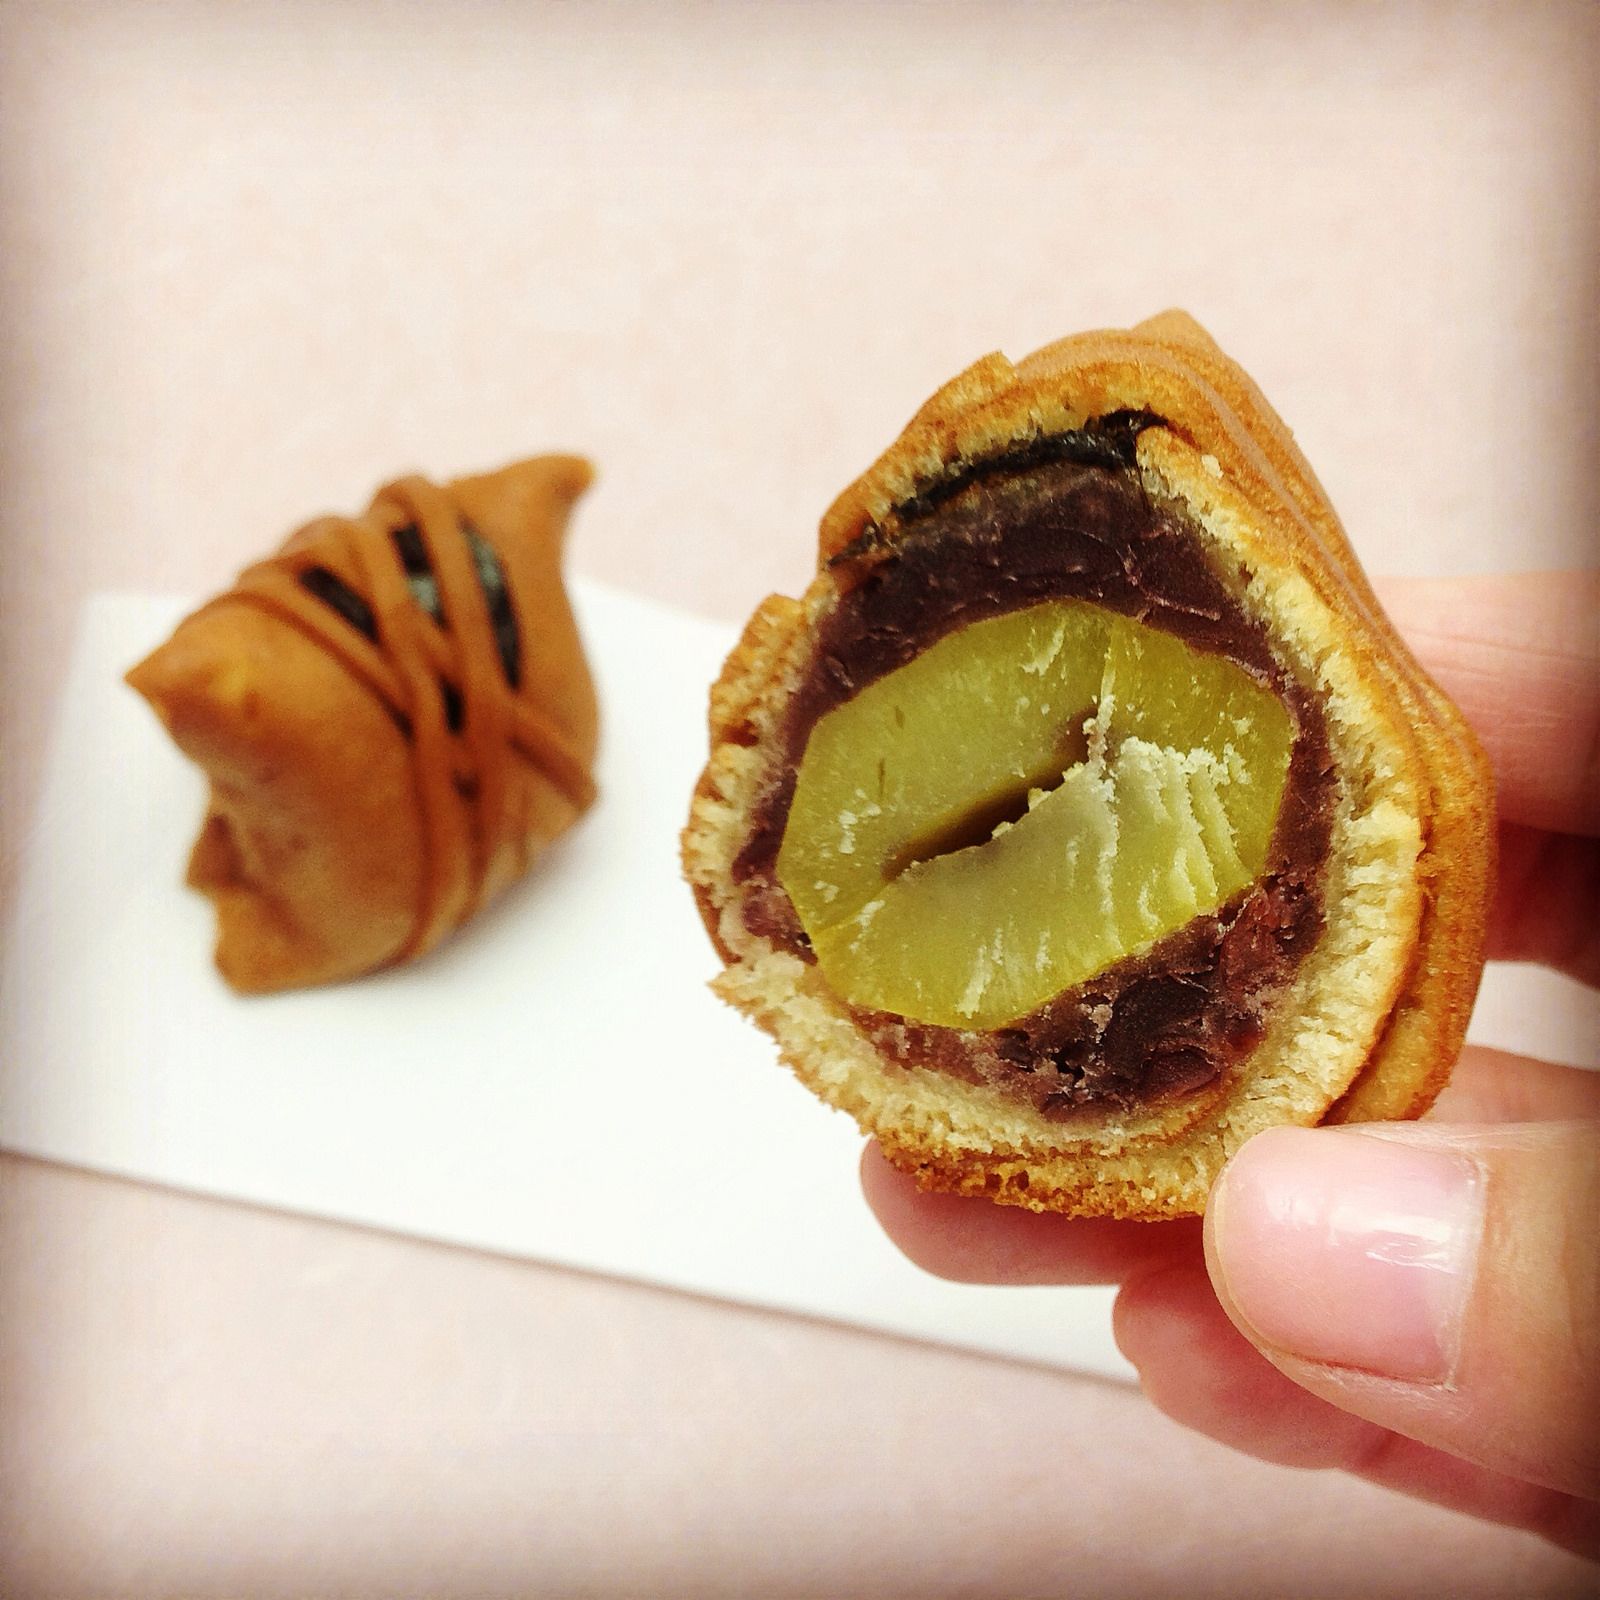 생활의달인 일본 코모 카부리 달인 맛있는 화과자 디저트 가게 은둔식달 오늘방송 맛집 정보